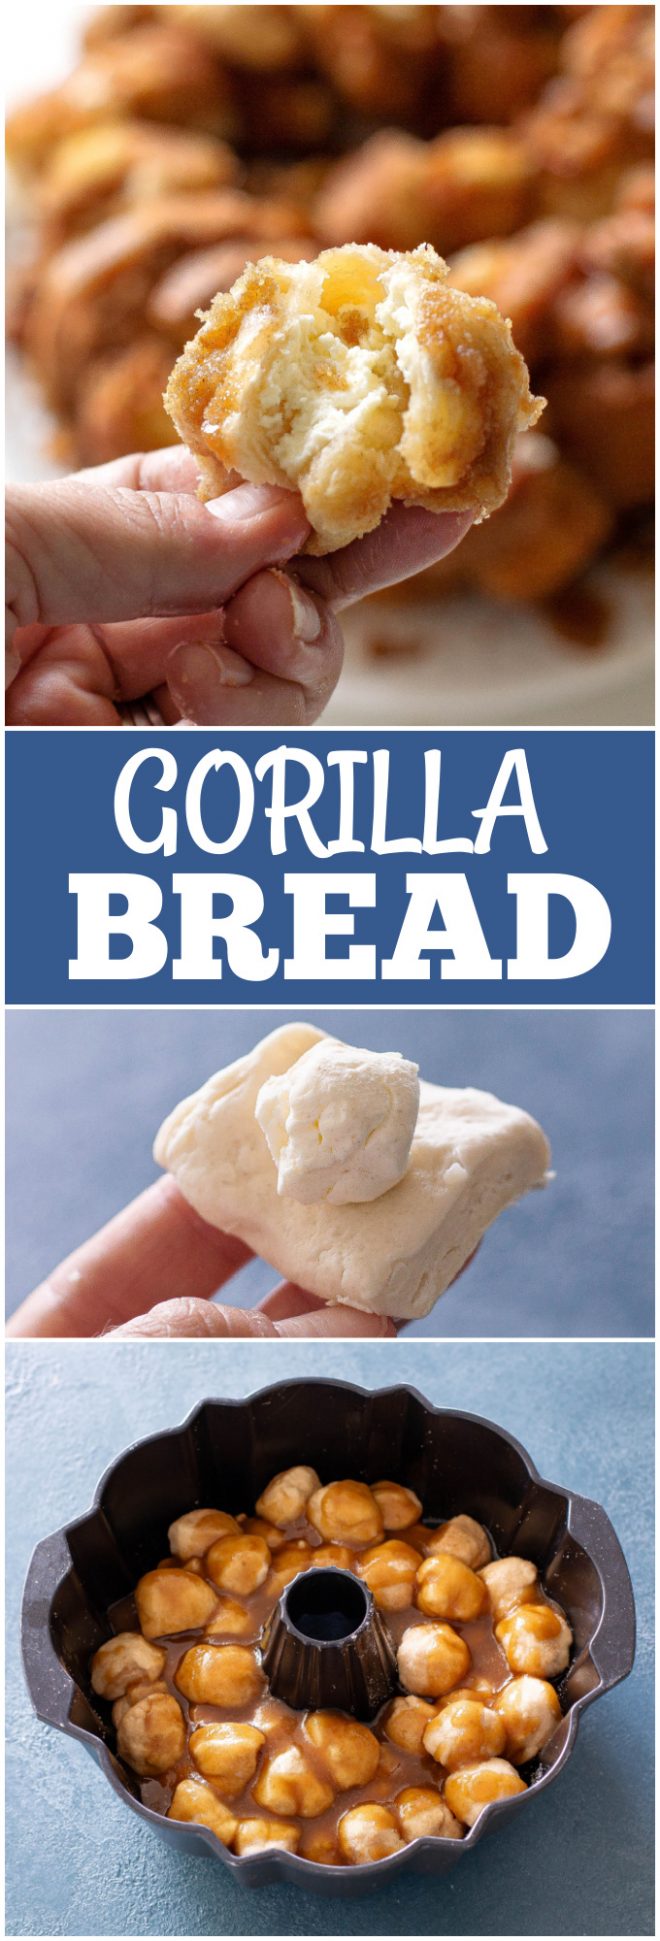 gorilla bread